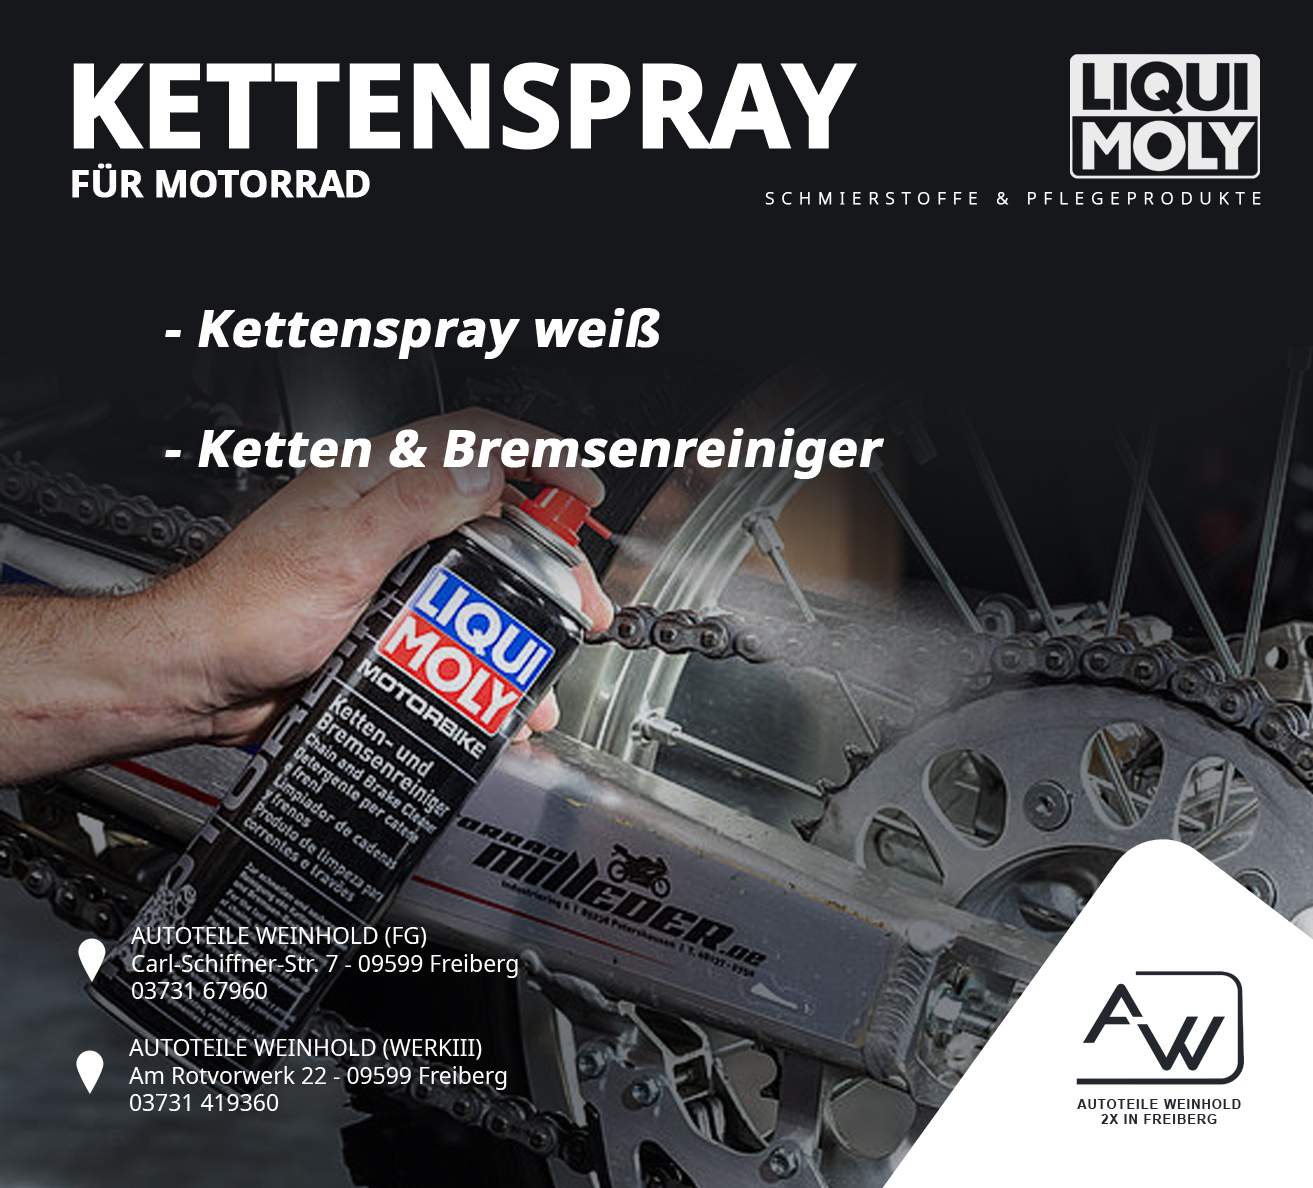 Kettenspray & Reiniger für dein Motorrad von Liqui Moly